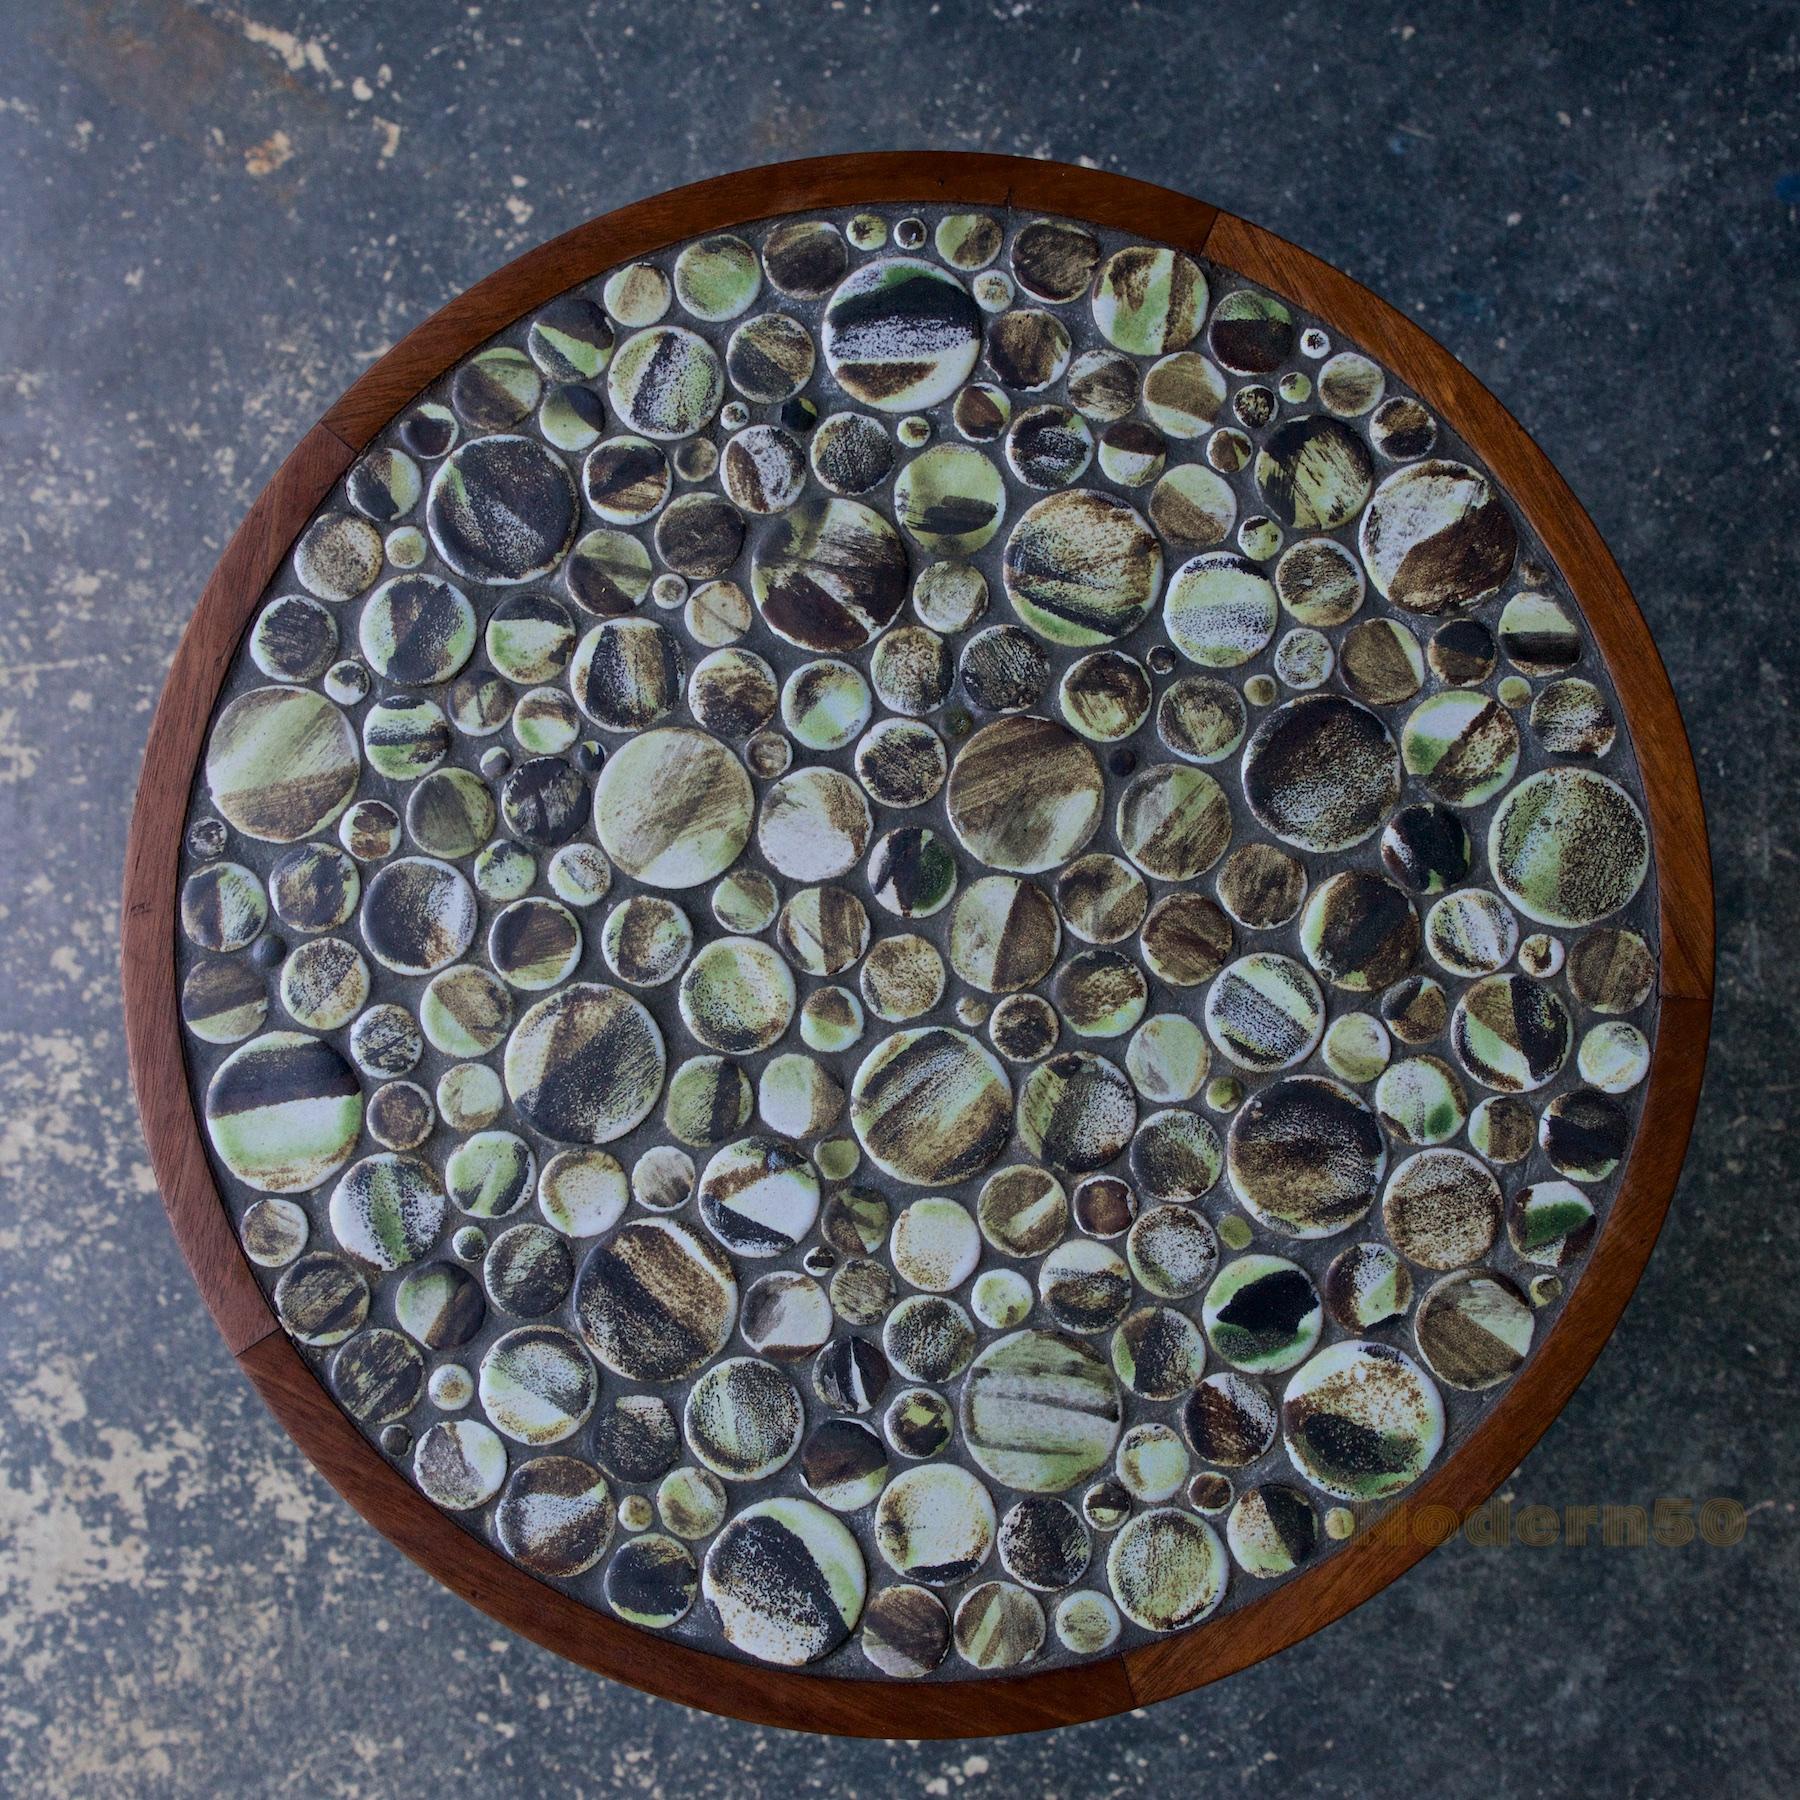 Un merveilleux exemple dans les tons de terre, socle et base droits en noyer huilé, avec des carreaux ronds en céramique à glaçage mat peu communs.